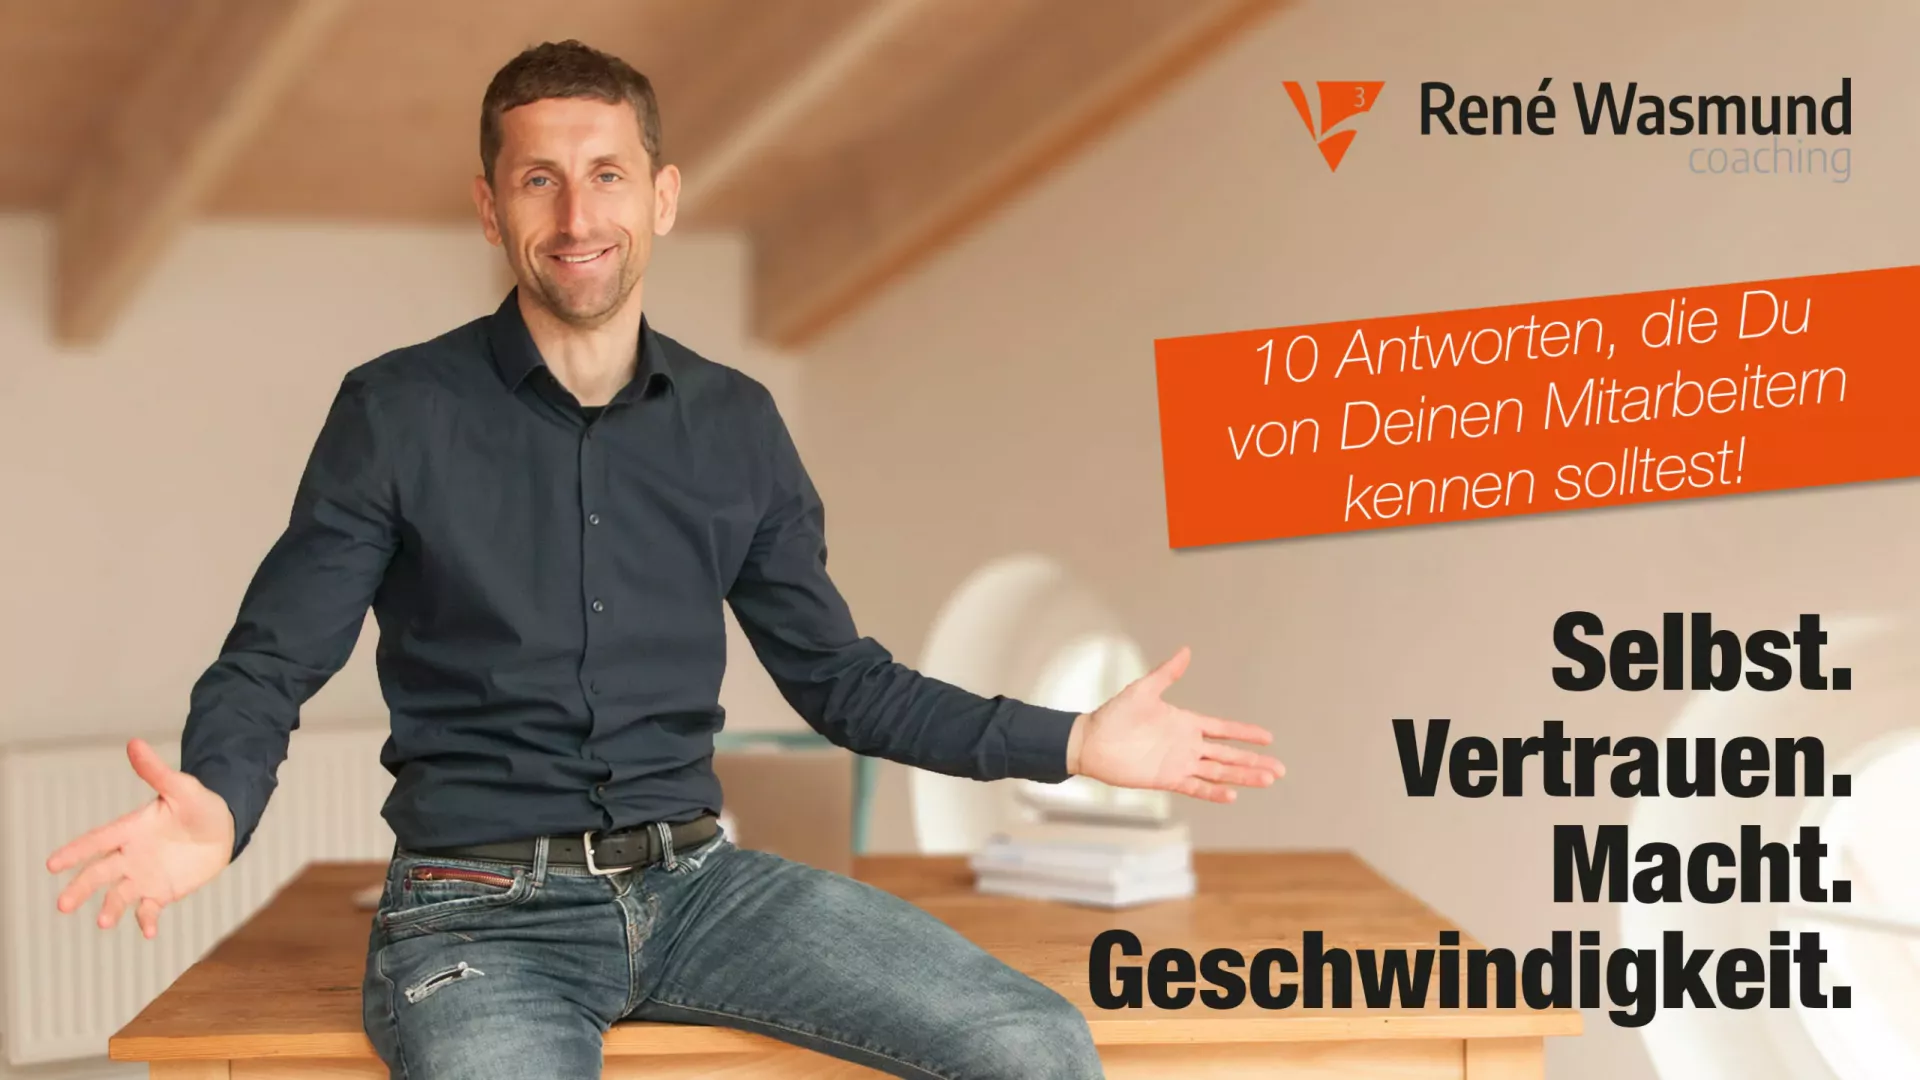 10 Antworten, die du von deinen Mitarbeitern kennen solltest - René Wasmund